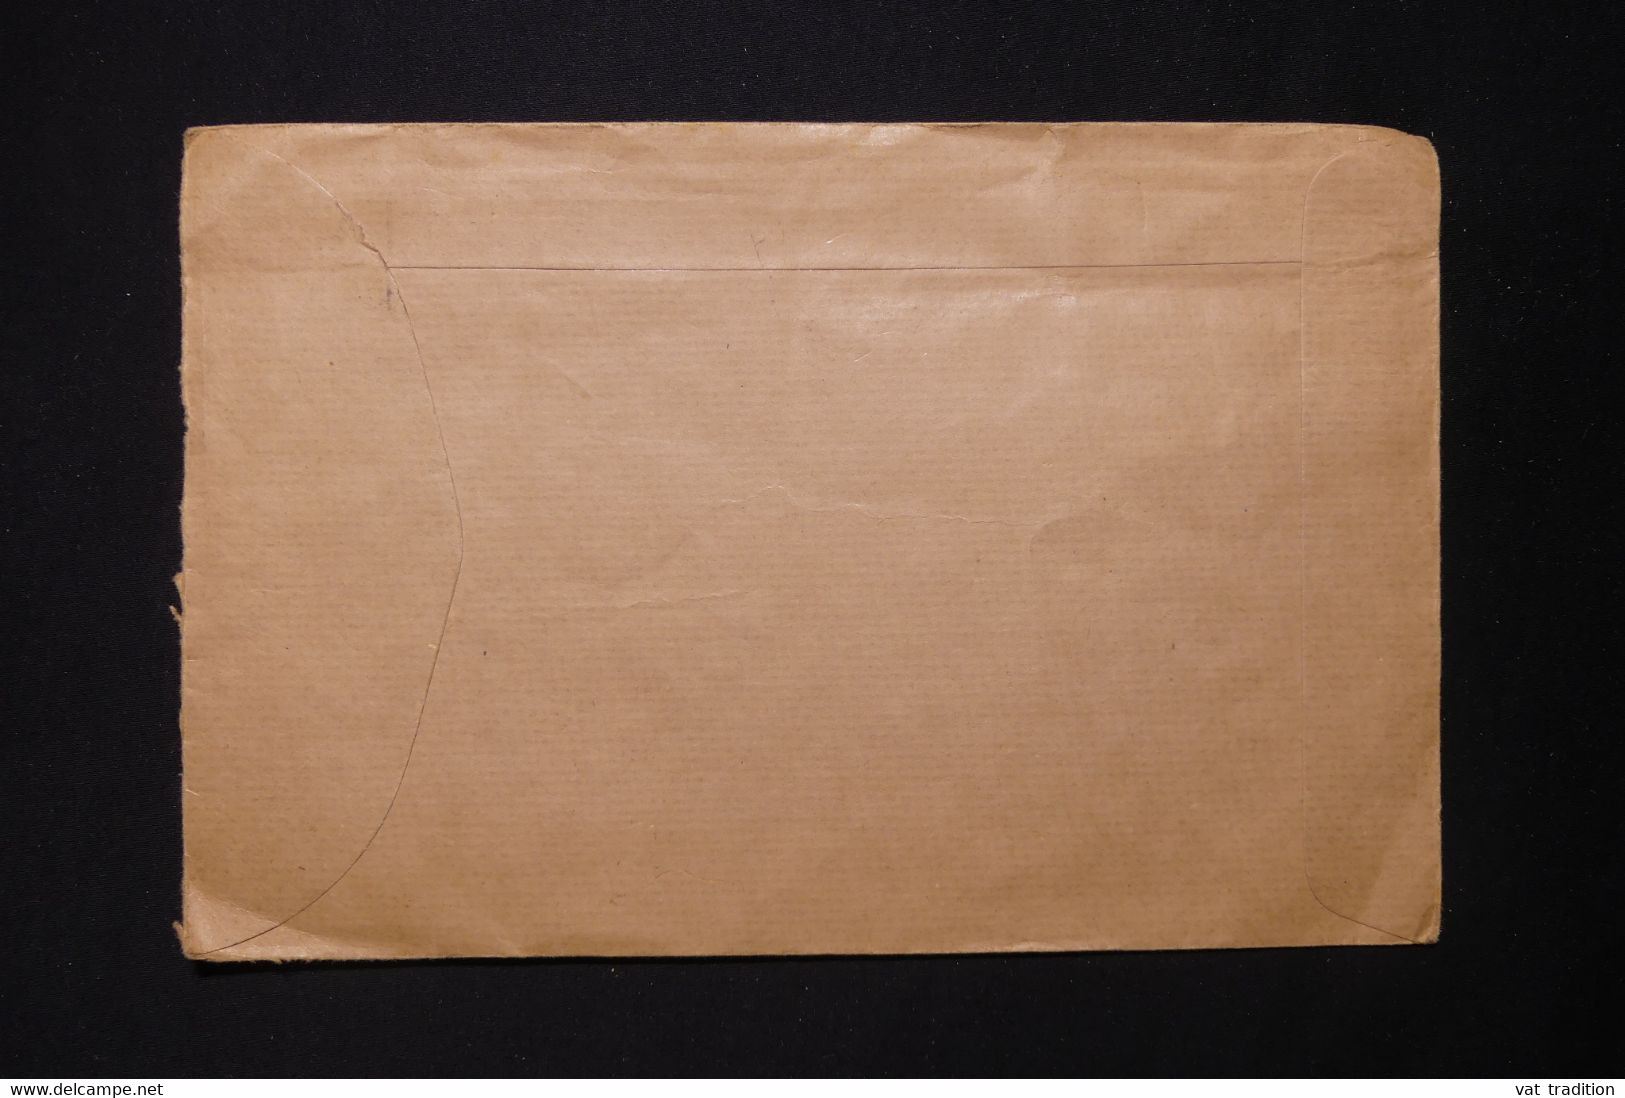 HONG KONG - Enveloppe Pour La Suisse En 1953 - L 83088 - Briefe U. Dokumente